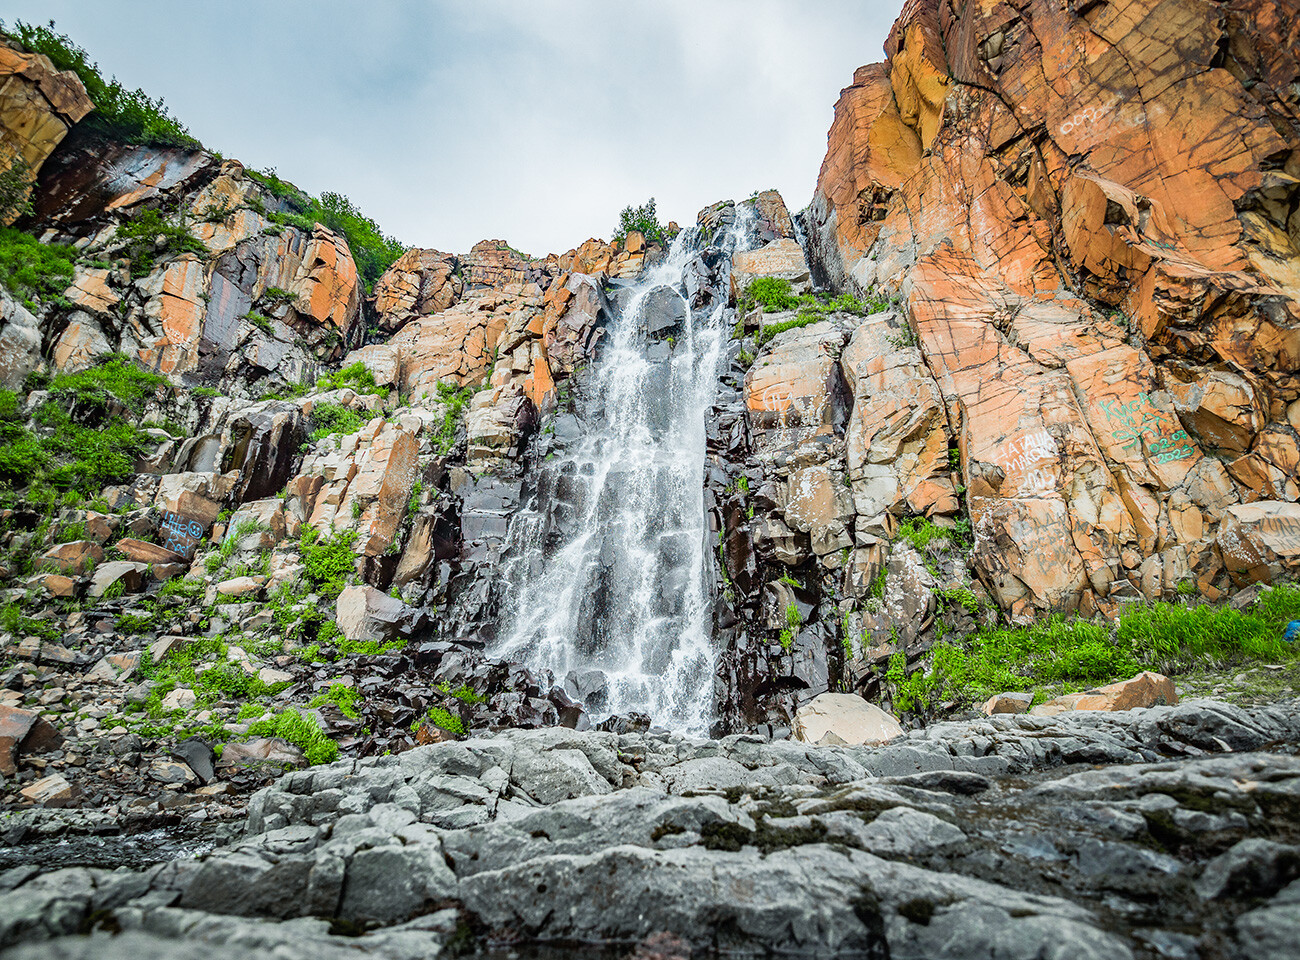 Waterfall at Krasniye Kamni (Red Stones).